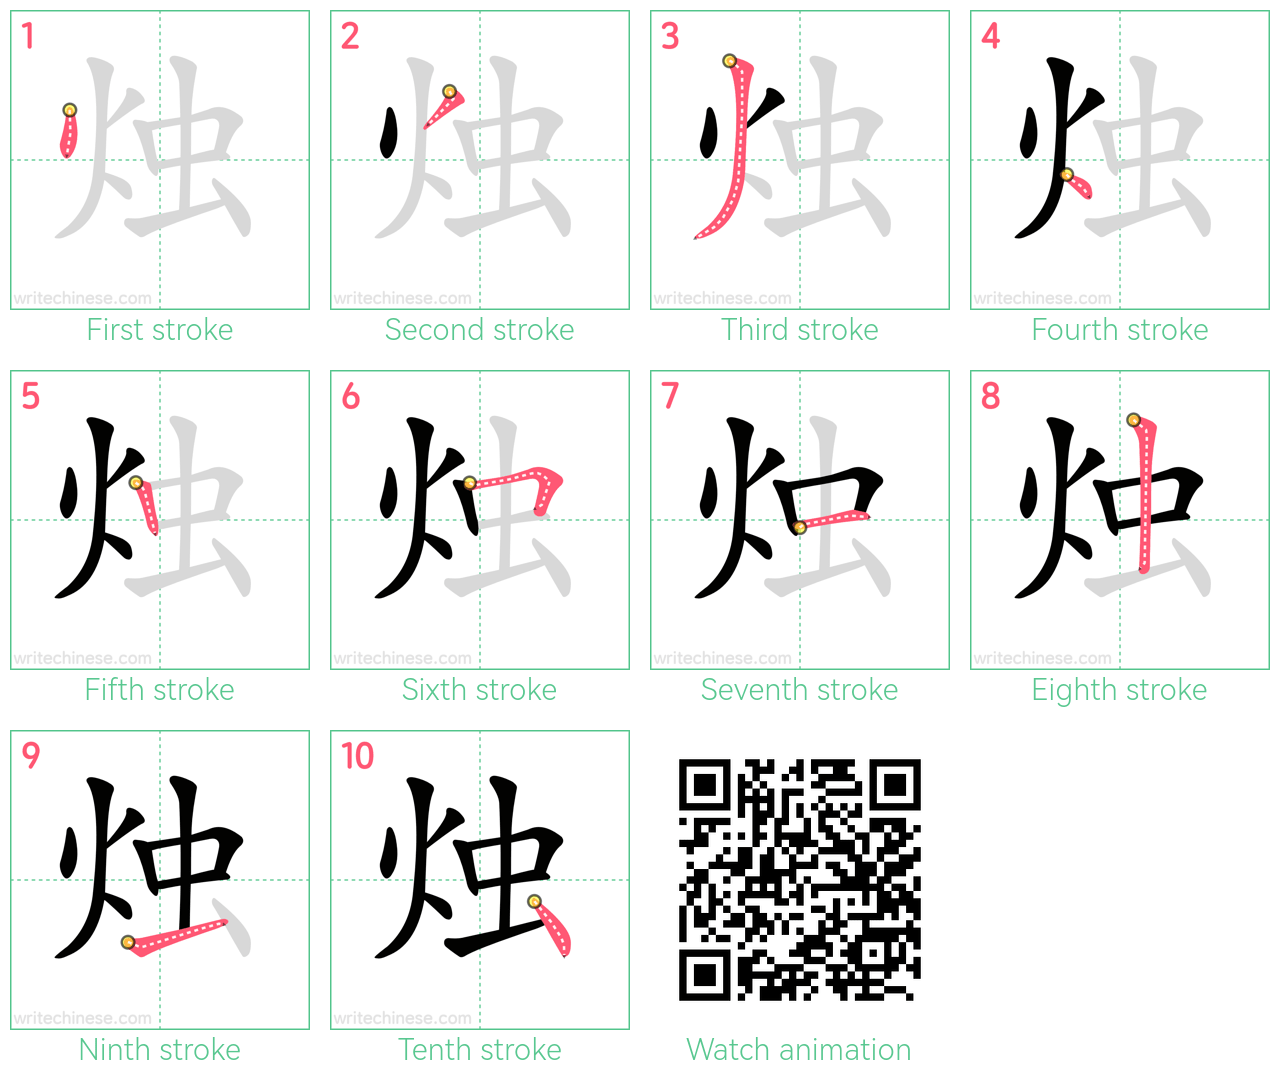 烛 step-by-step stroke order diagrams